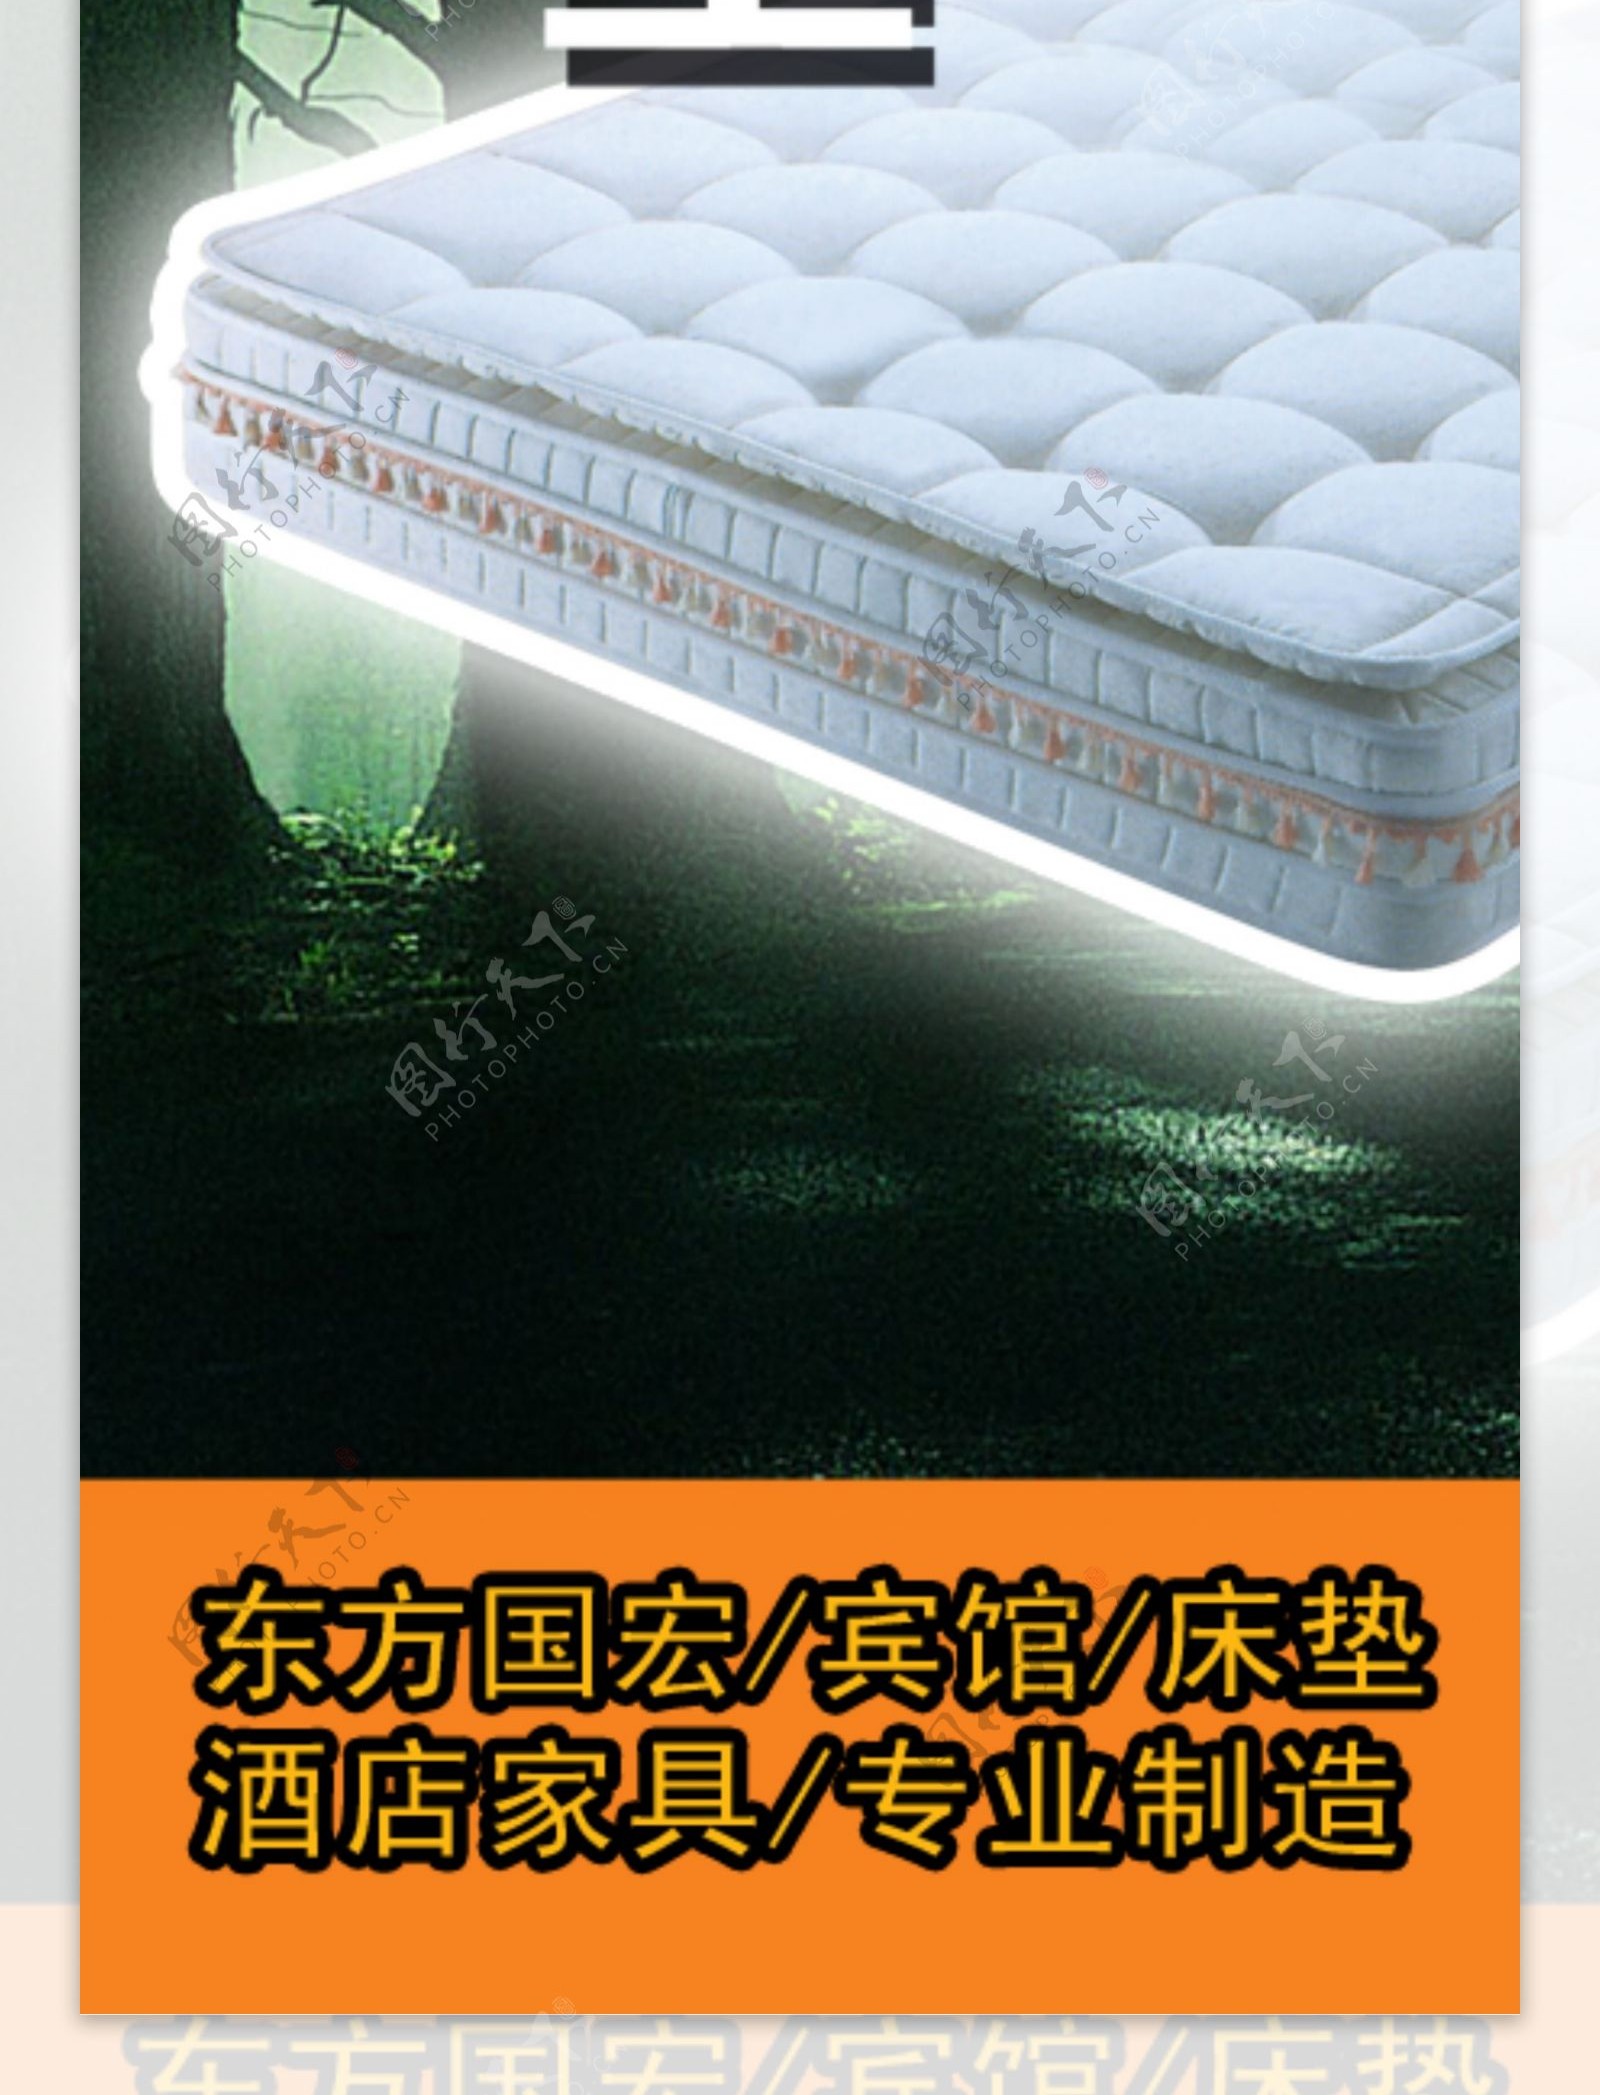 东方富宏床垫广告PSD分层图片